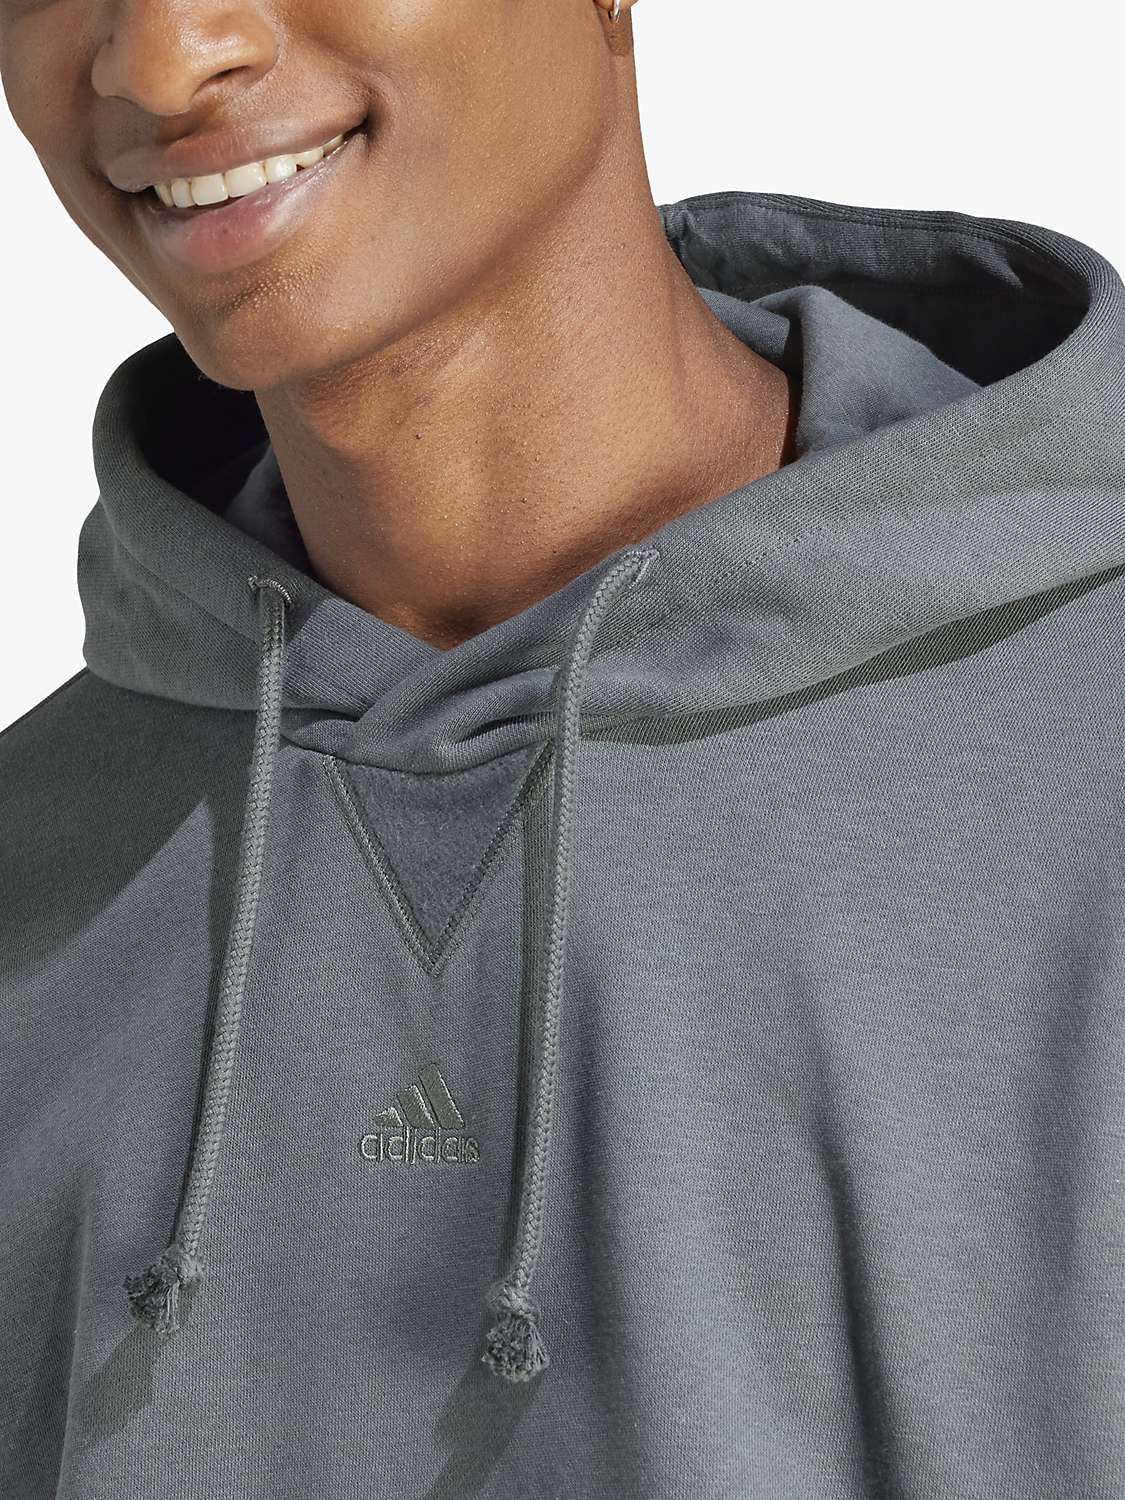 Buy adidas ALL SZN Men's Fleece Hoodie, Legend Ivy Online at johnlewis.com